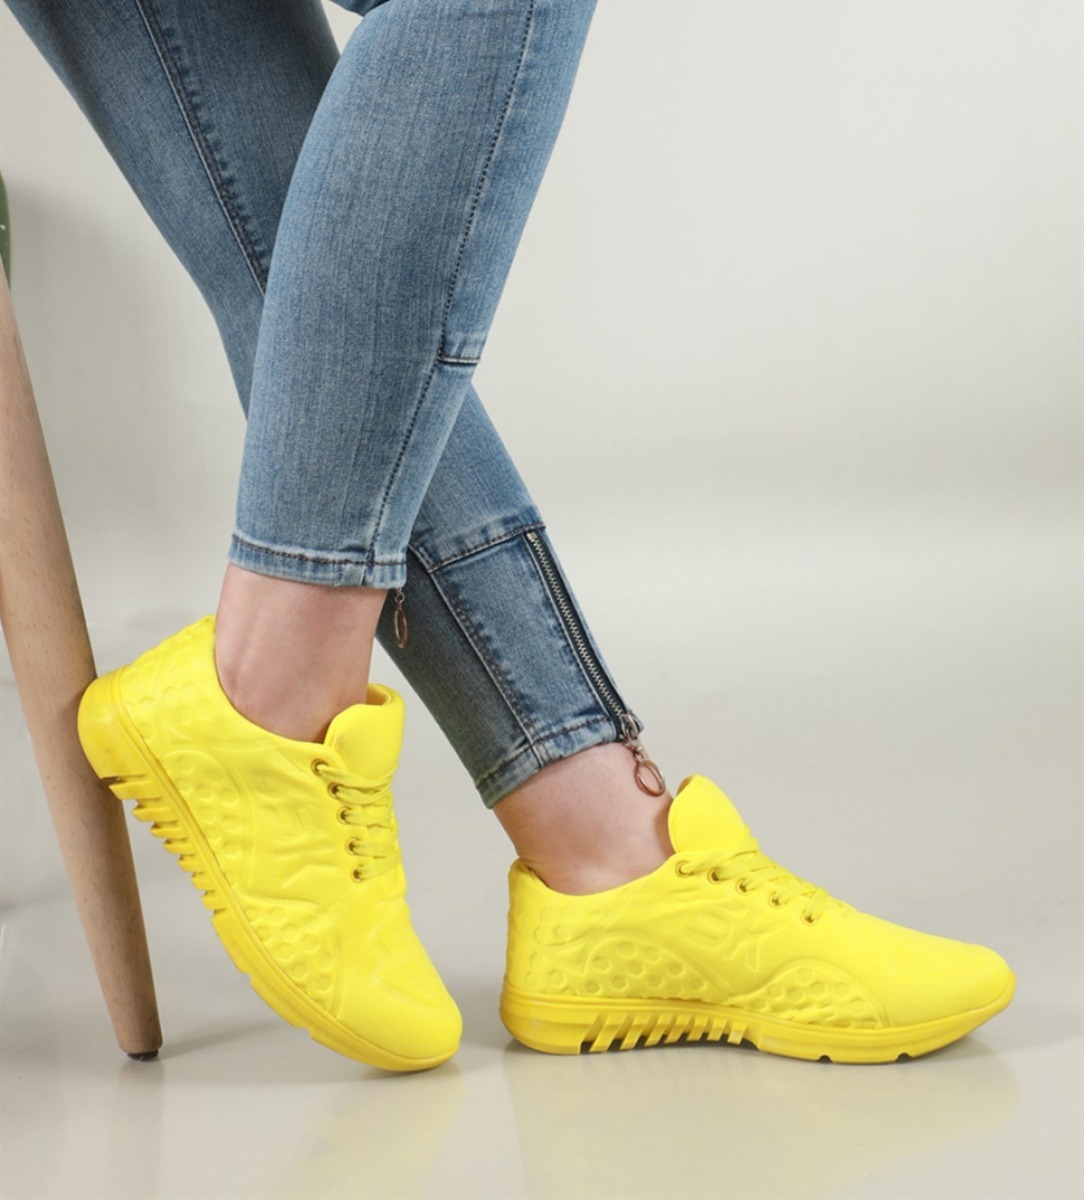 Flo Rahat Nefes Alır Sneakers Sarı Kadın Spor Ayakkabı NS-20. 1